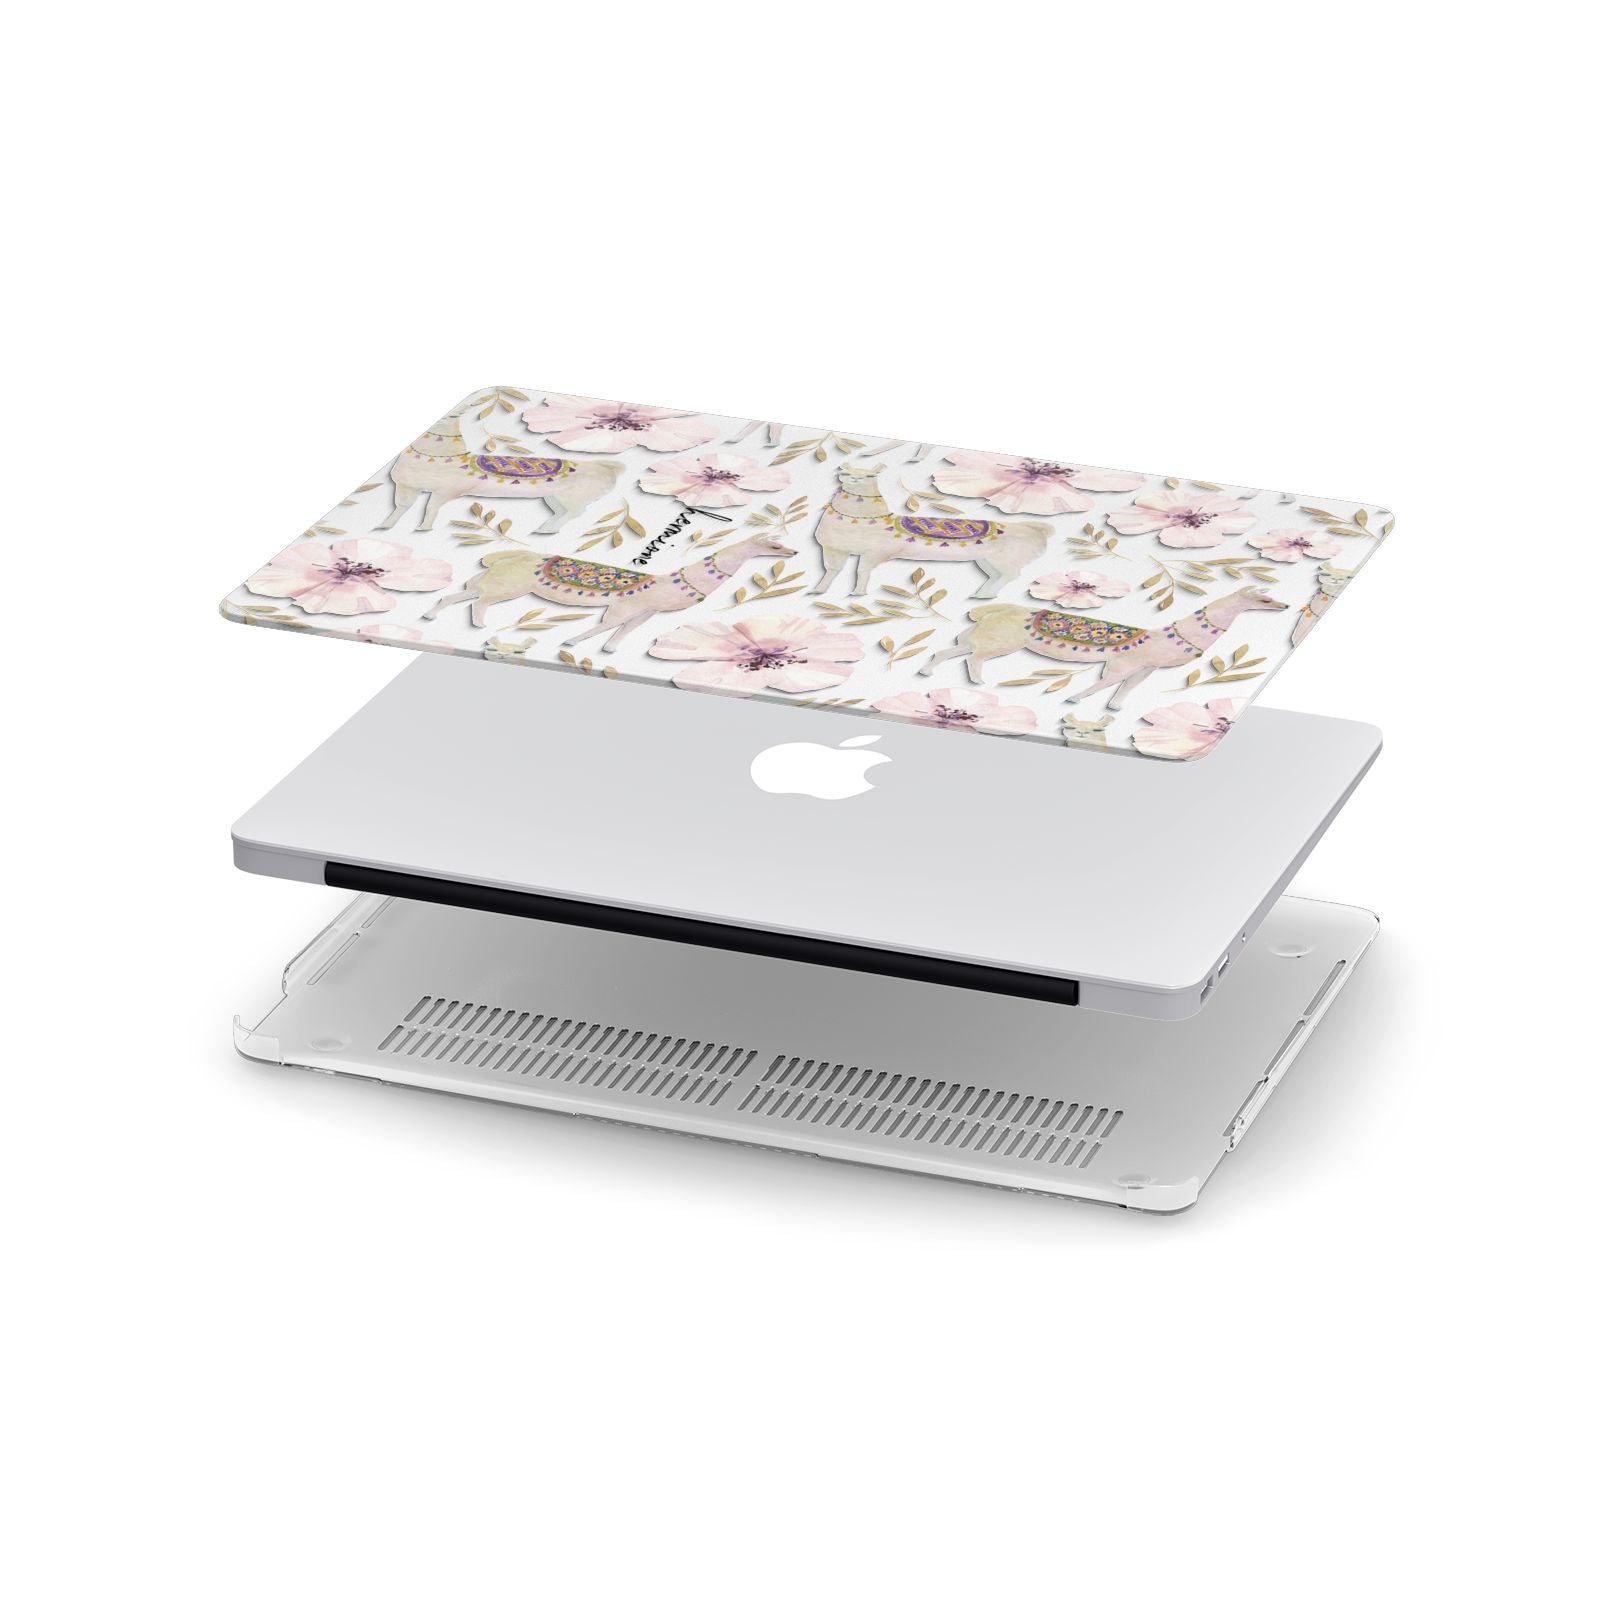 Personalised Llamas Apple MacBook Case in Detail